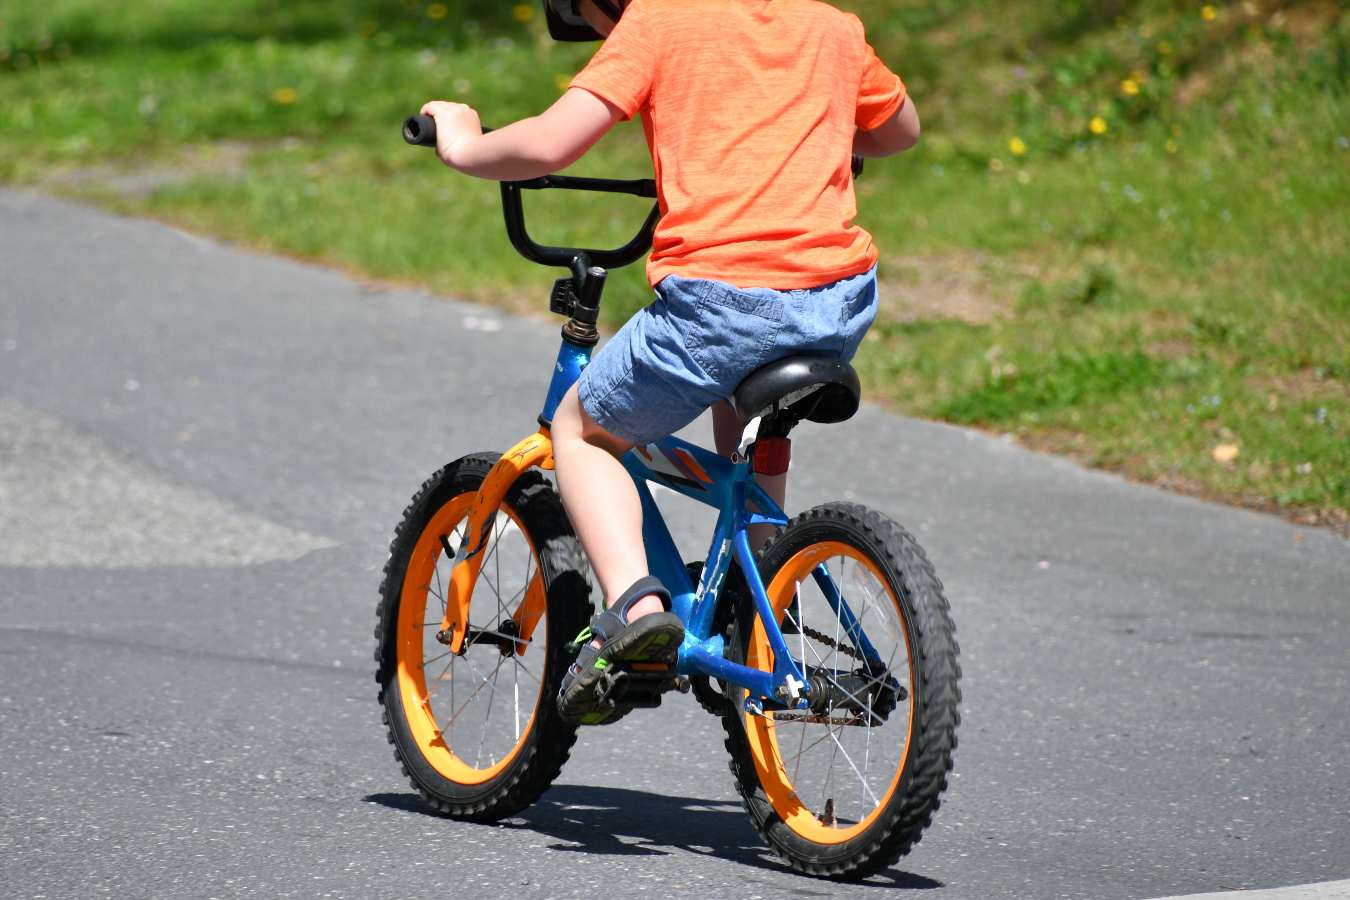 Dziecko na rowerze przepisy 2022: większe mandaty za brak uprawnień! Czy dzieciom naprawdę grozi 1500 zł kary?